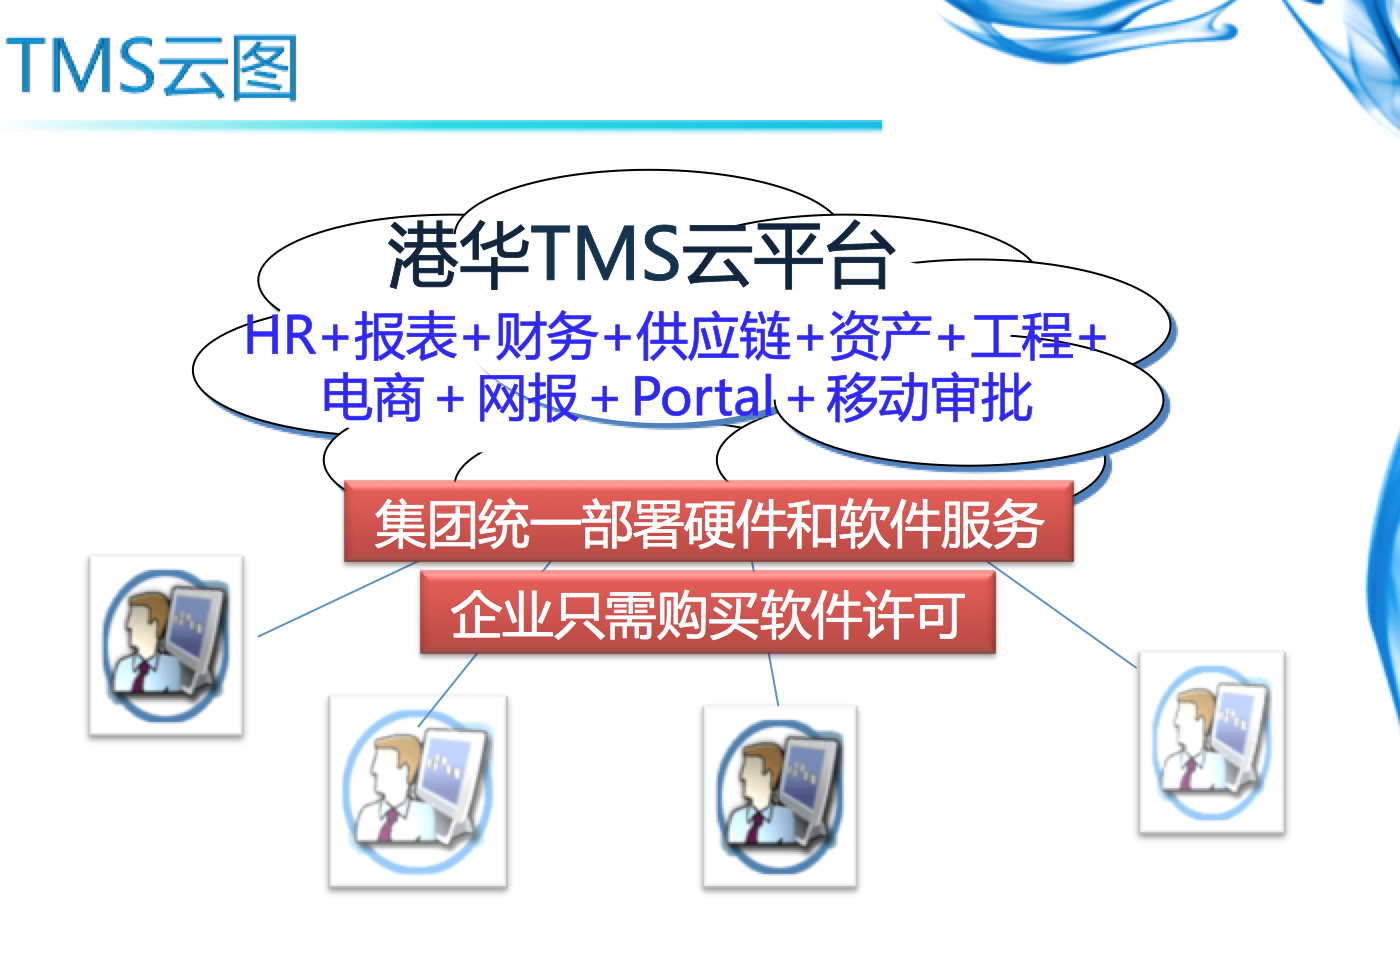 TMS(TMS是港華燃氣管理信息系統的簡稱)